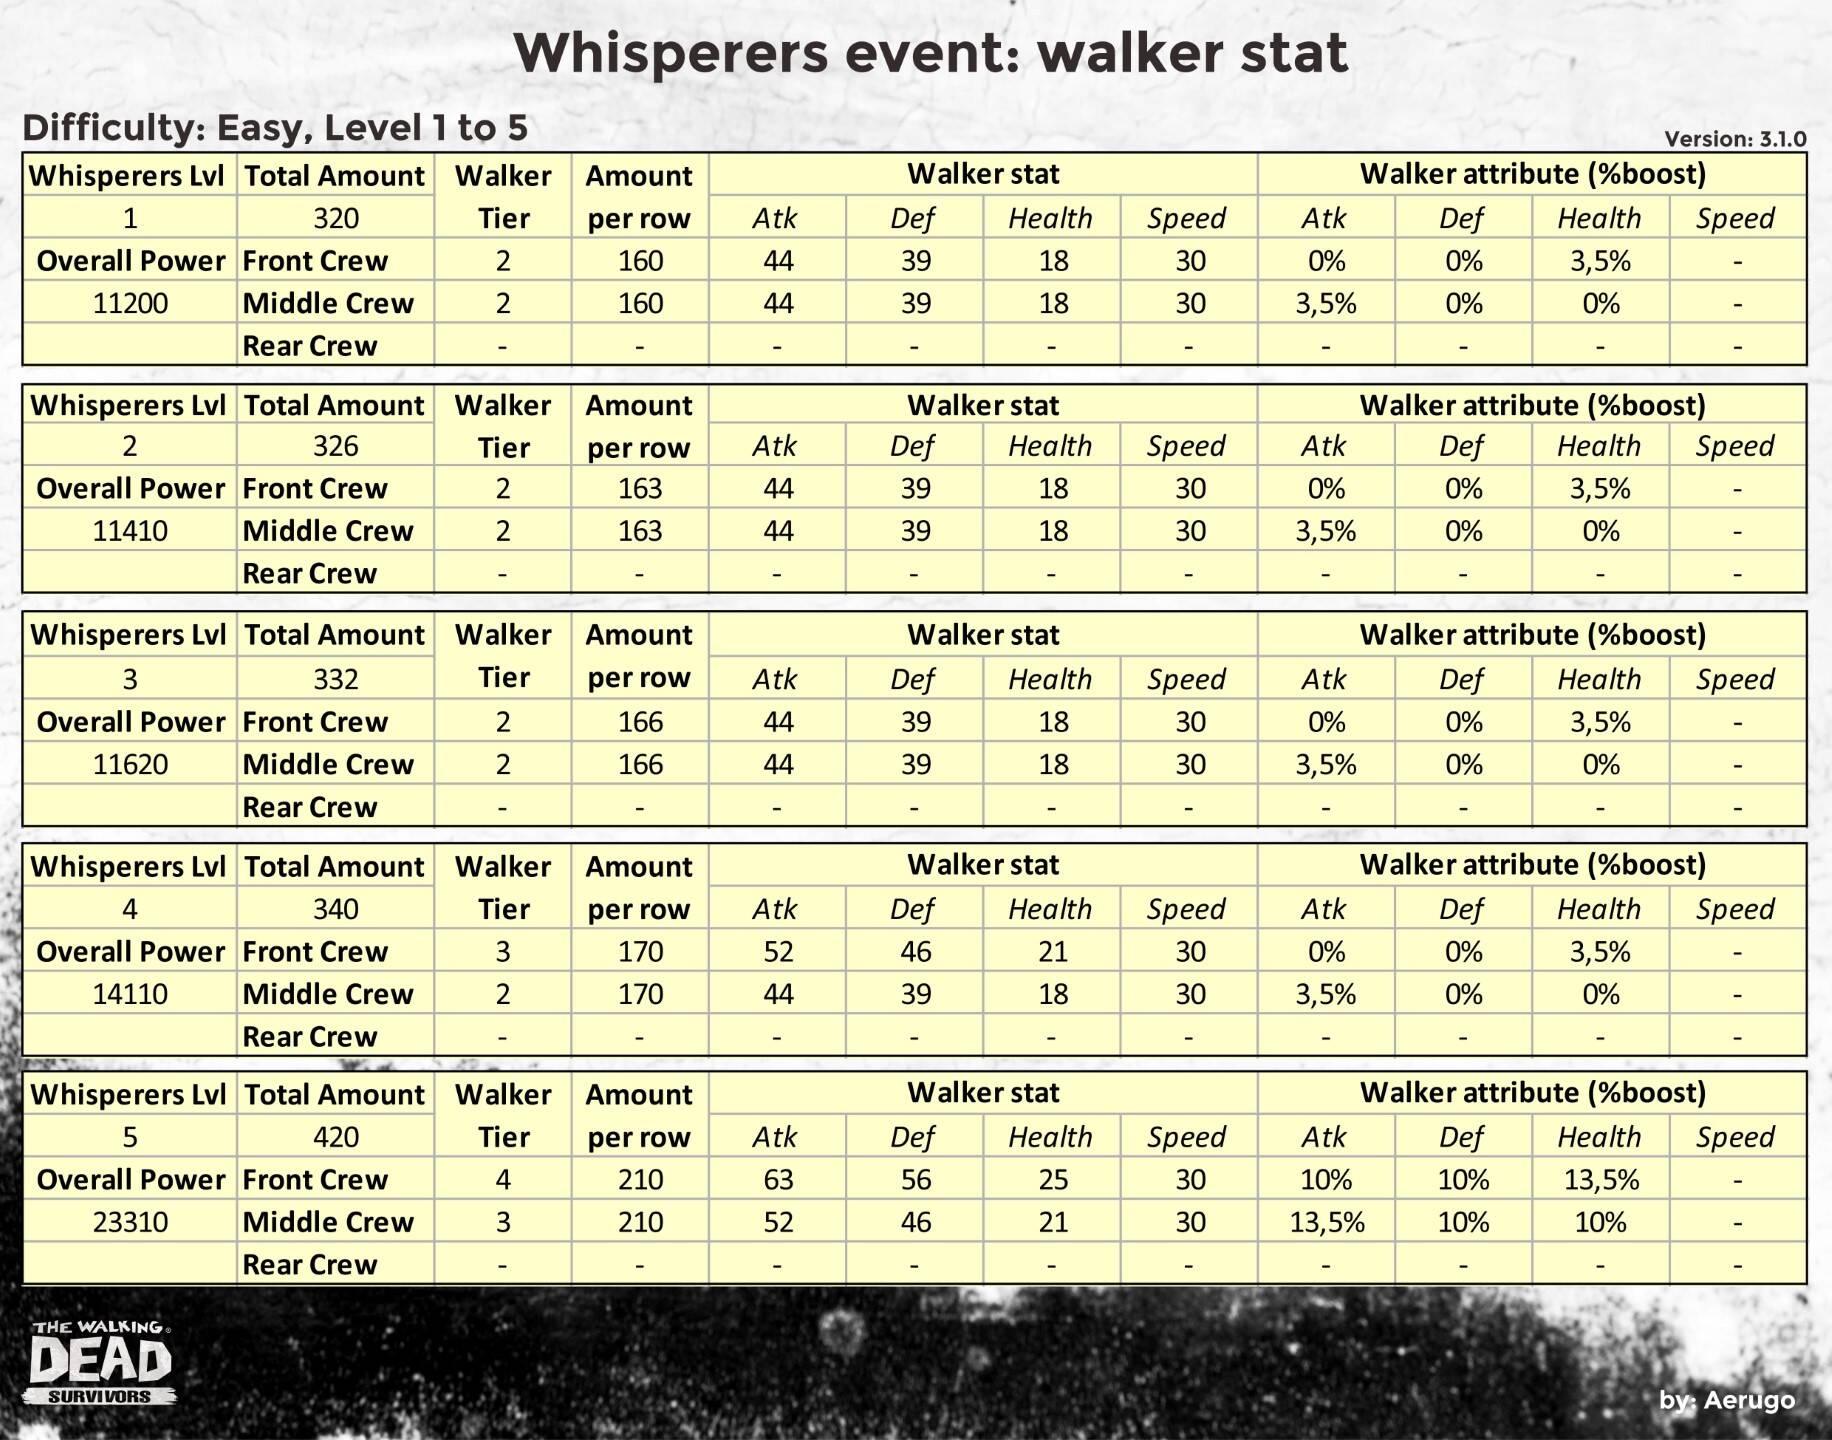 Whisperers_walkerstat_v3.1.0_part01 (1).jpg